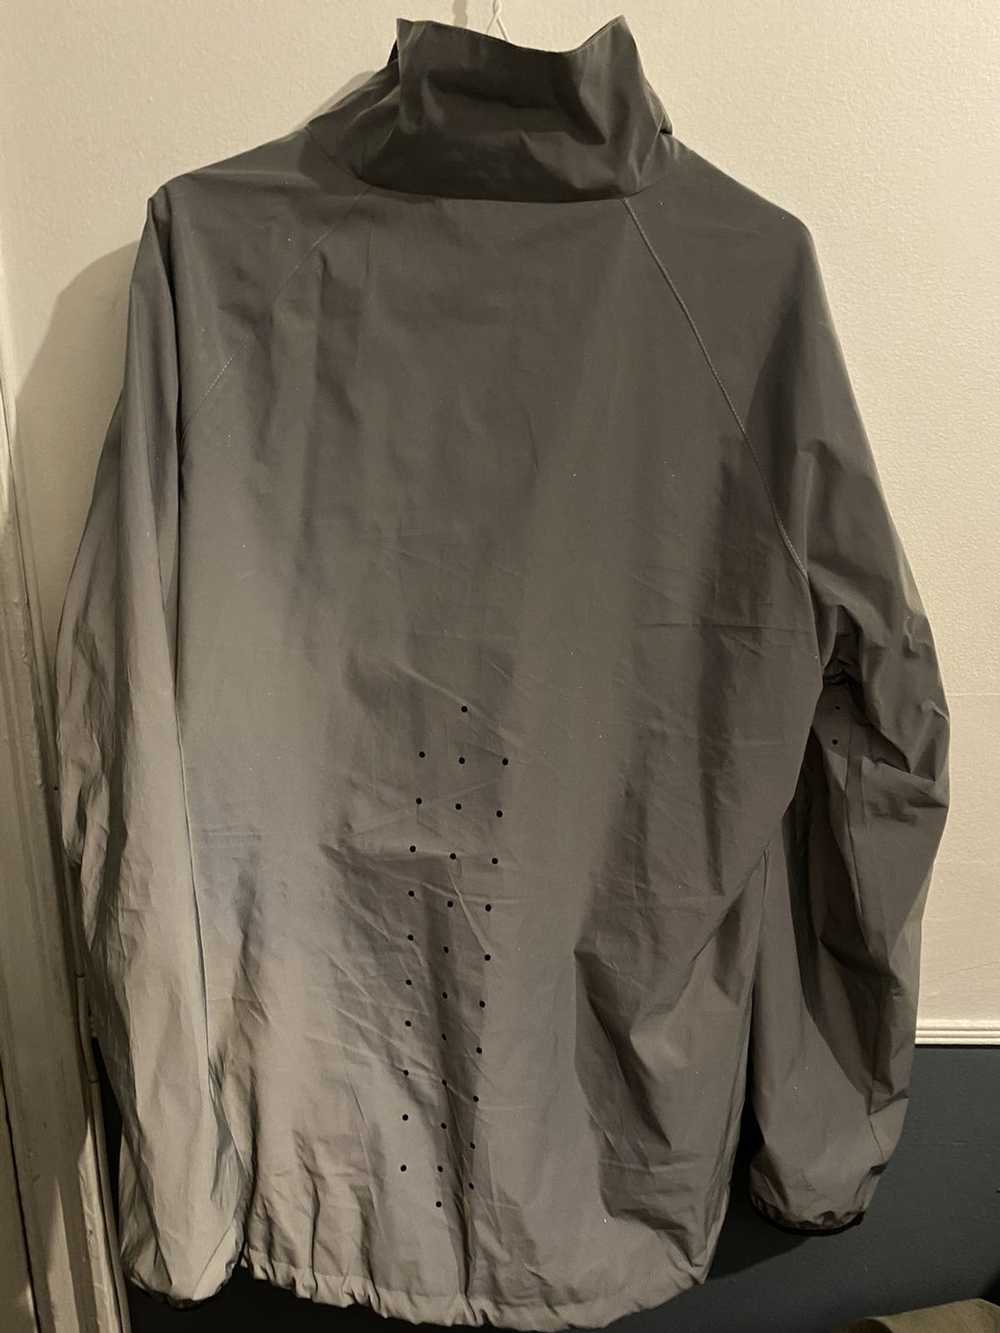 3m Jacket 3M Windbreaker jacket size medium - image 4